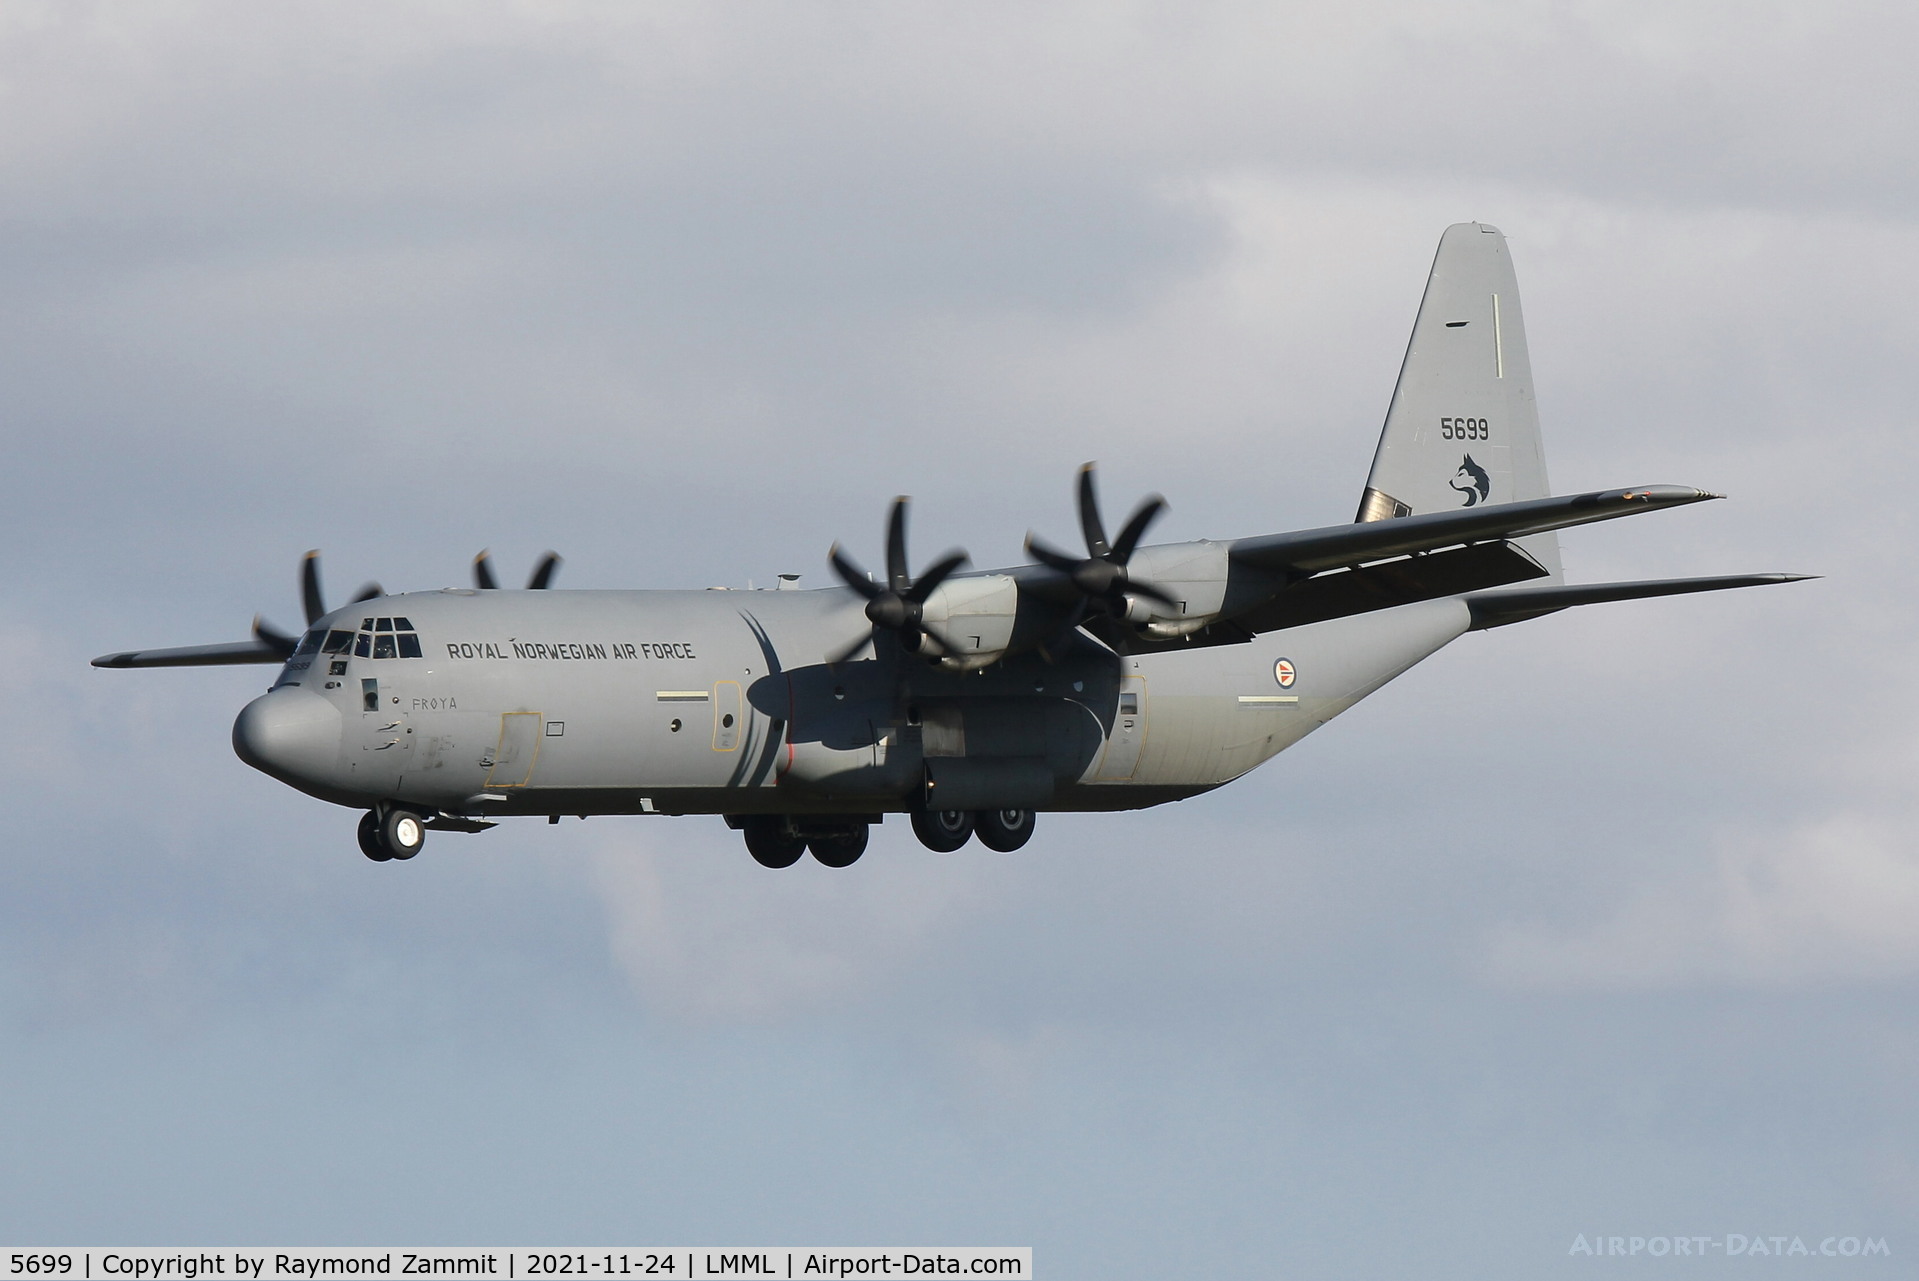 5699, 2008 Lockheed Martin C-130J-30 Super Hercules C/N 382-5699, Lockheed C-130J Super Hercules 5699 Norwegian Air Force